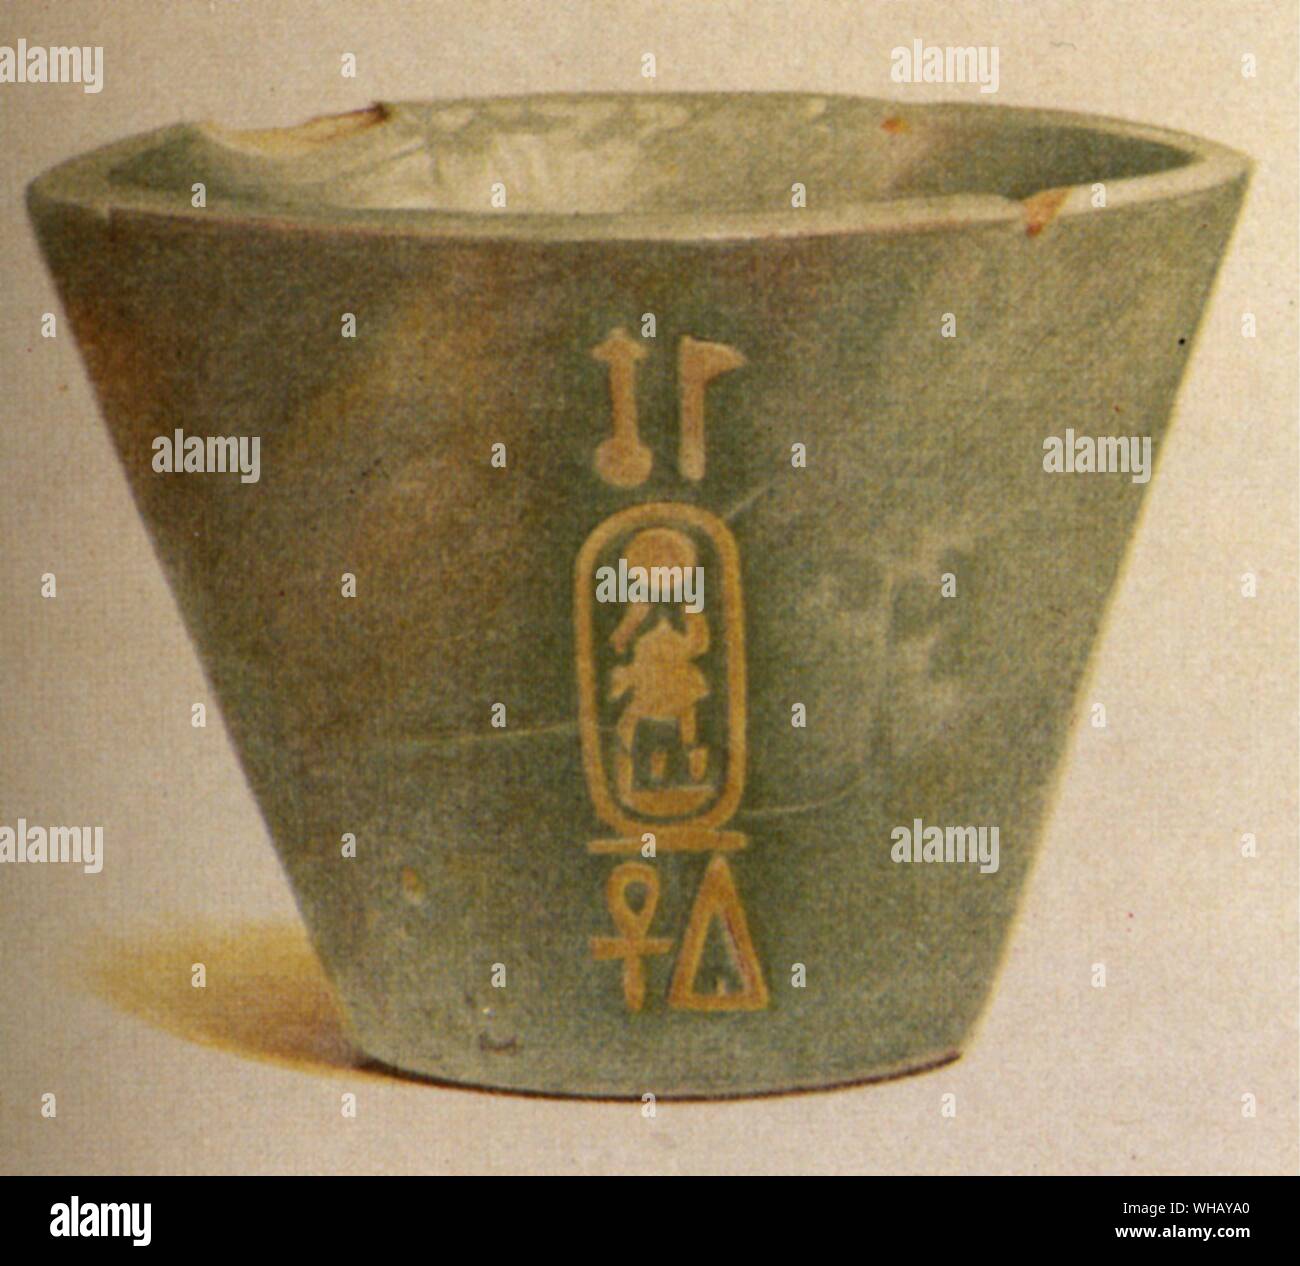 Die blau-grüne faience Cup von Tut-ench-Amun Ayrton unter einem Boulder im Gully mit Grab Amenophis II gefunden. Tutanchamun (alternative Transkription Tut-ench-Amun), namens Tutankhaten schon früh in seinem Leben, war der Pharao der achtzehnten Dynastie in Ägypten (Herrschaft von 1334 v. Chr./1333 v. Chr.-1323 v. Chr. lebte. 1341 v. Chr.-1323 v. Chr.), in der Zeit als das neue Königreich bekannt. Aakheperure Amenhotep II (d. 1400 v. Chr.) war der siebte Pharao der 18. Dynastie in Ägypten. Er regierte von 1427 v. Chr. bis 1400 v. Chr... Tal der Könige von John Romer, Seite 217. Stockfoto